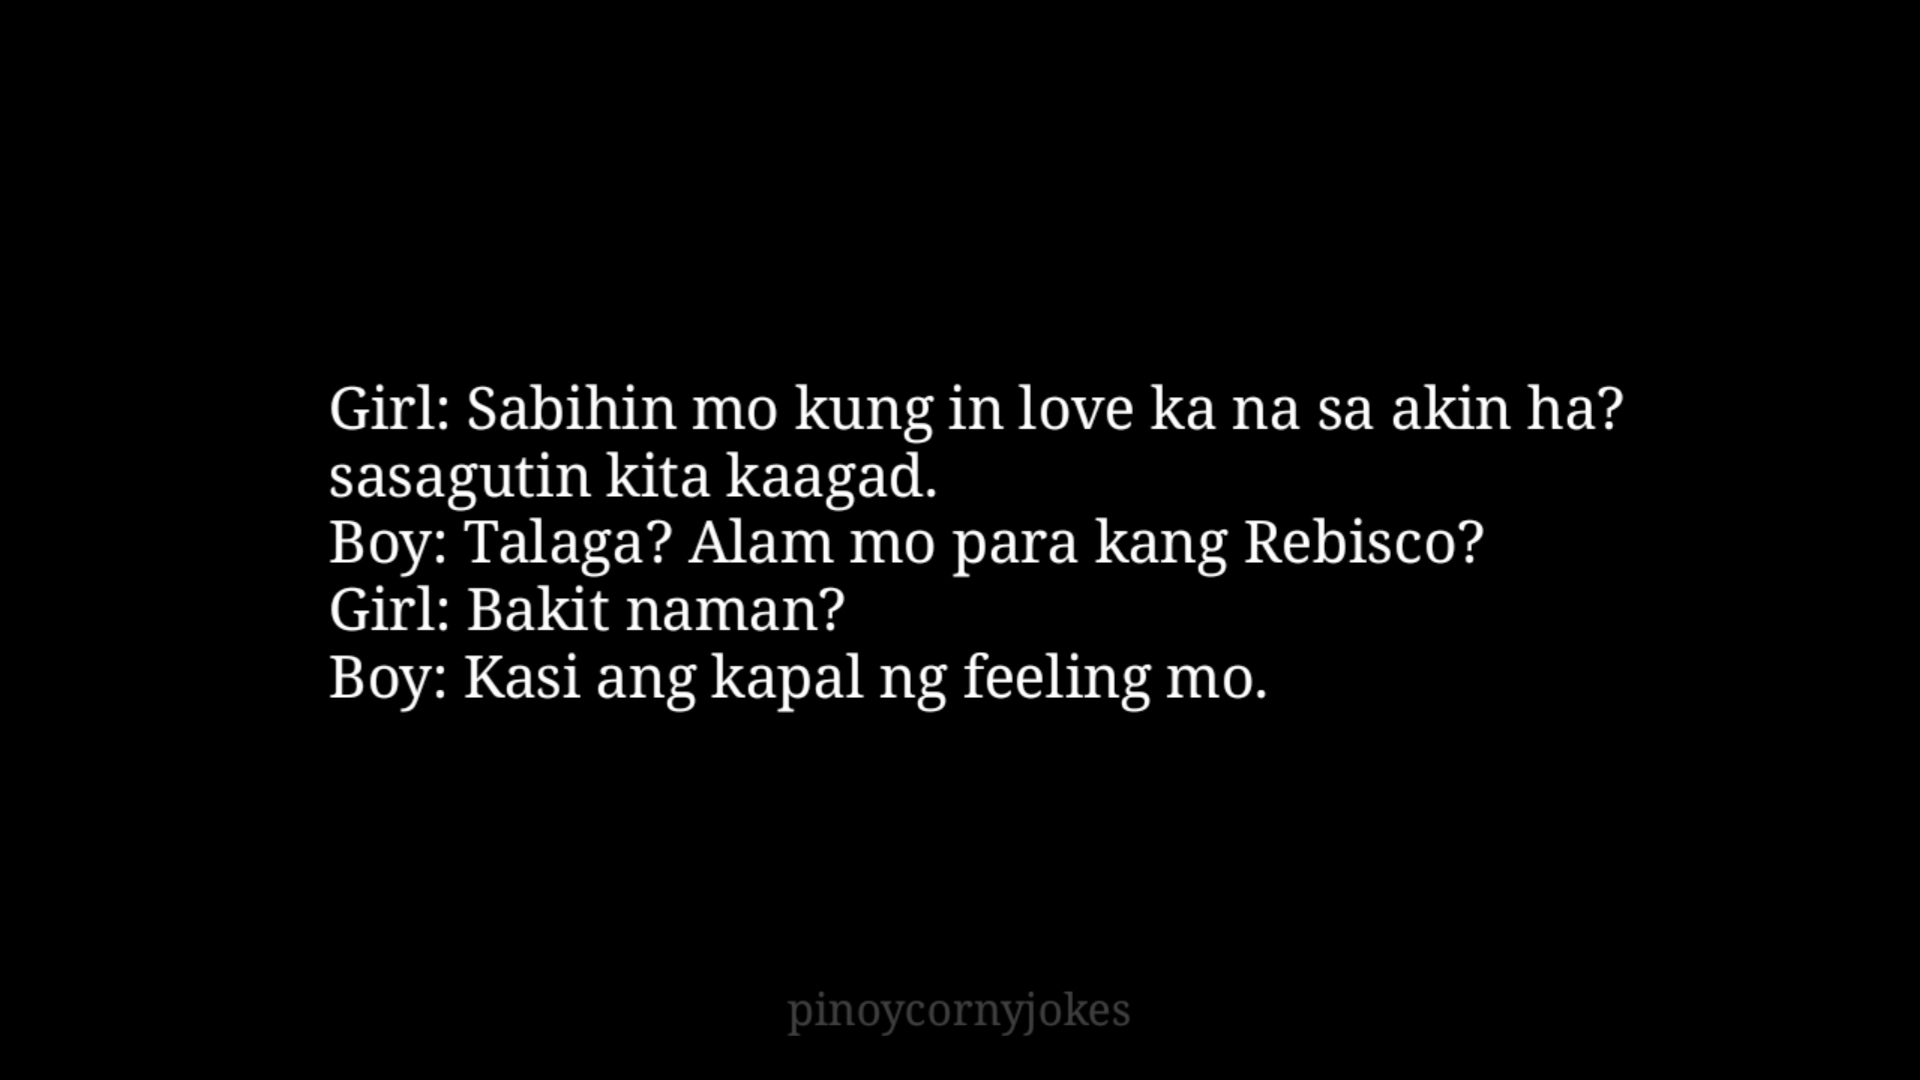 Parang Rebisco Pick Up Lines Tagalog